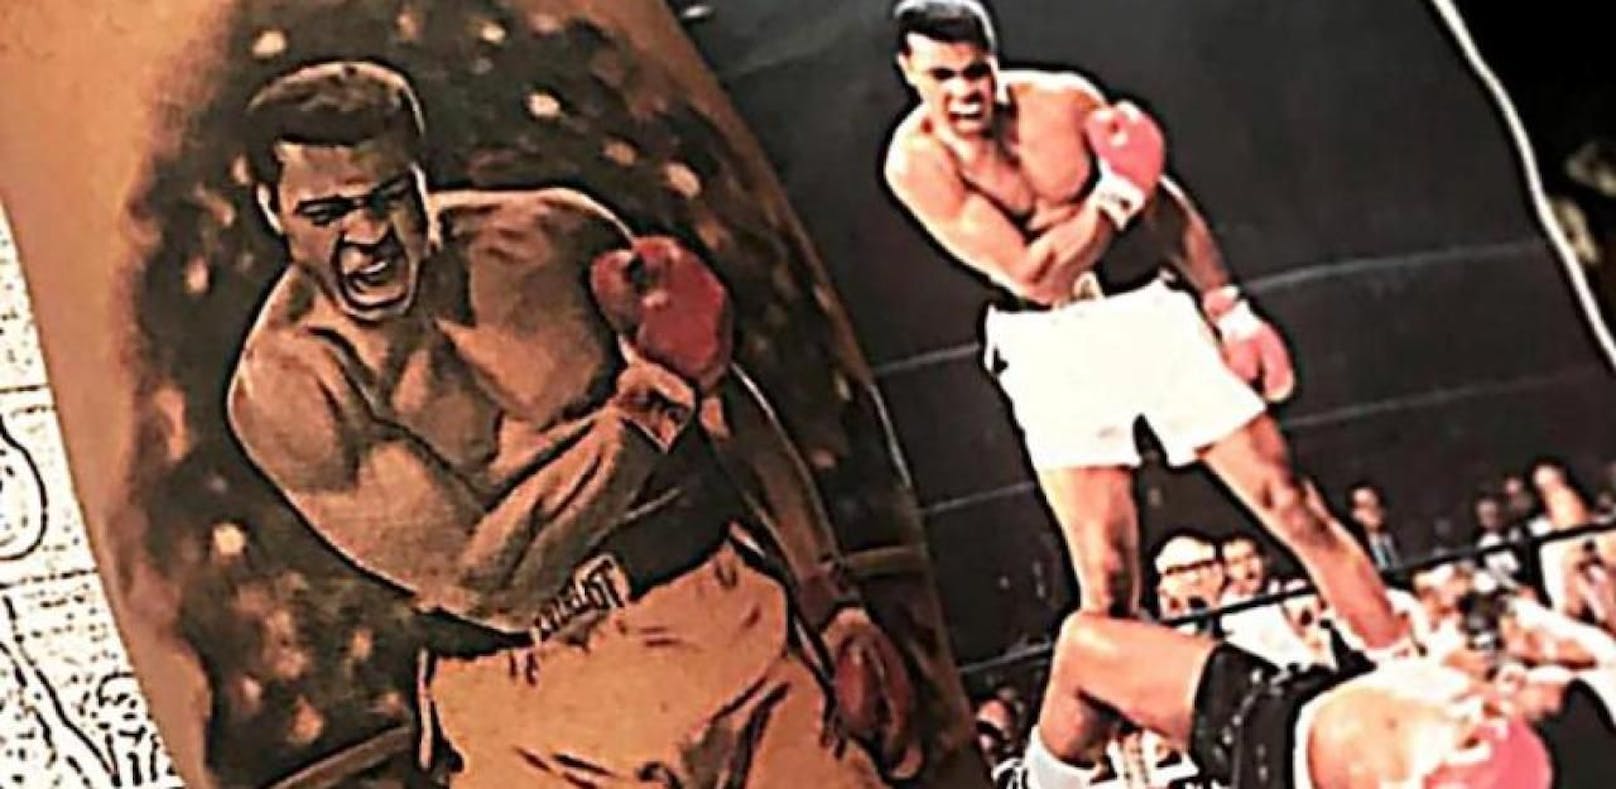 Lewis Hamilton zeigt sein neues Waden-Tattoo von Box-Legende Muhammad Ali.